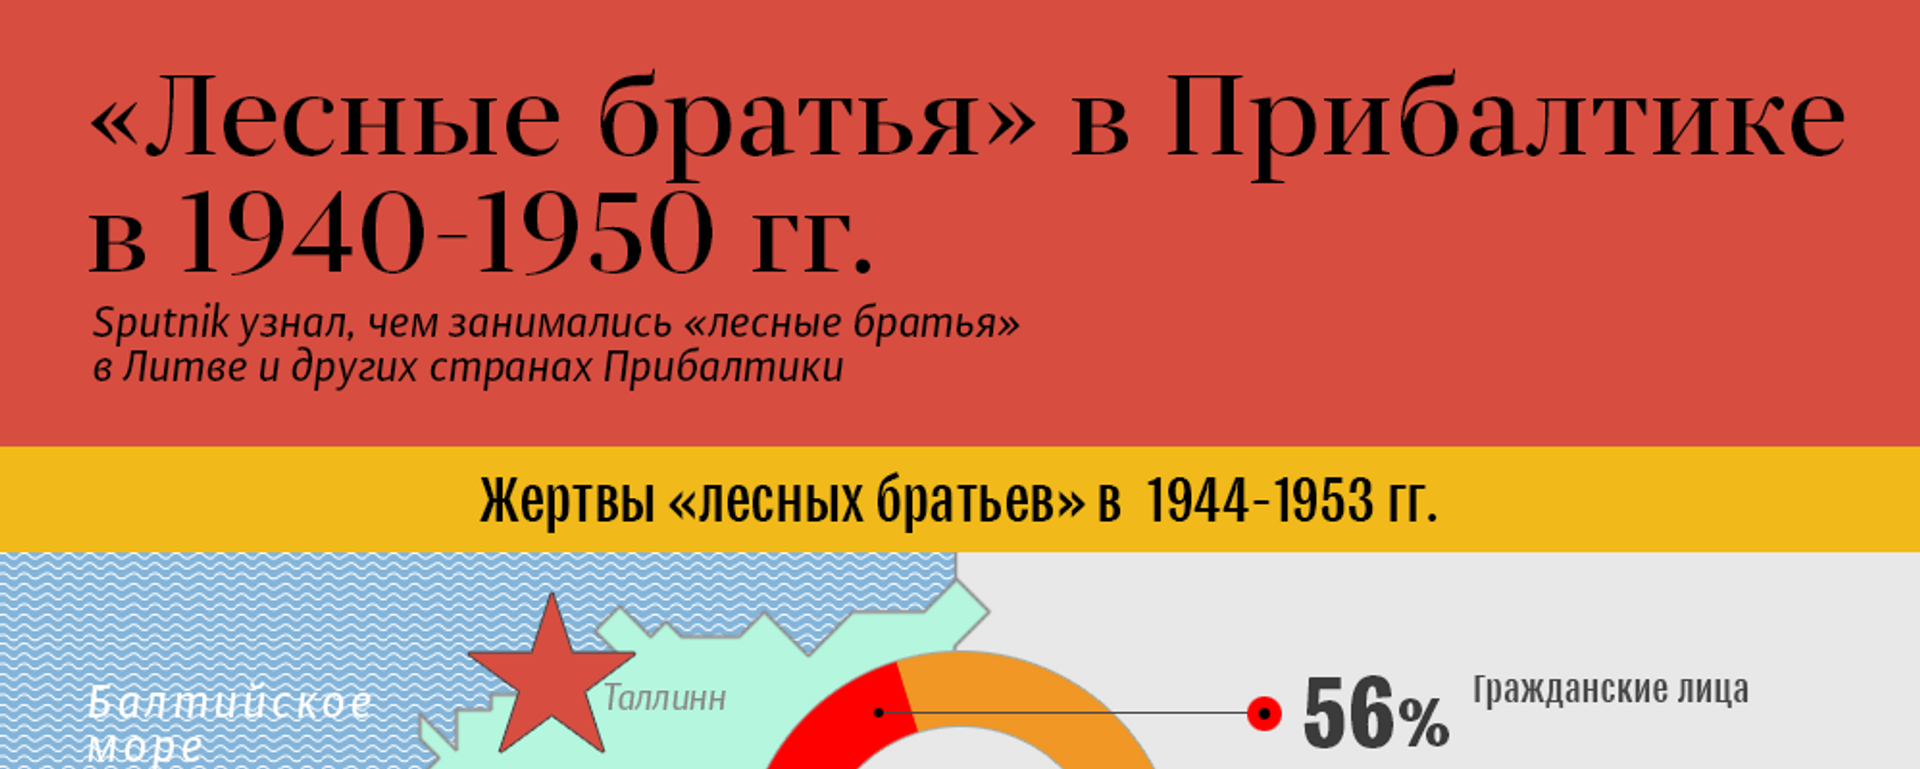 «Лесные братья» в Прибалтике в 1940-1950 гг. - Sputnik Литва, 1920, 14.12.2017